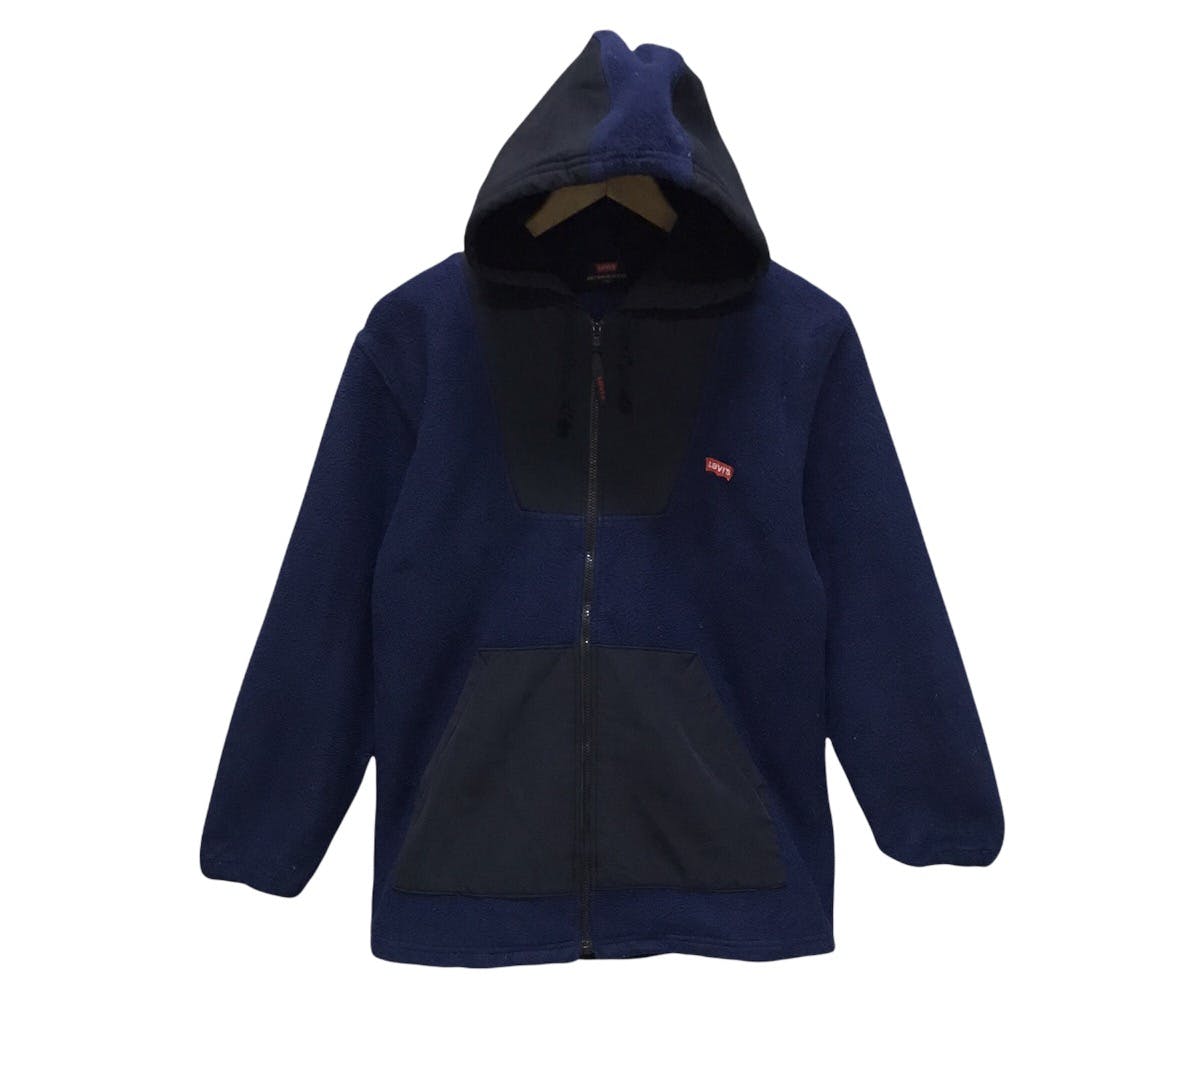 Levis fleece hoodie zipper - 1